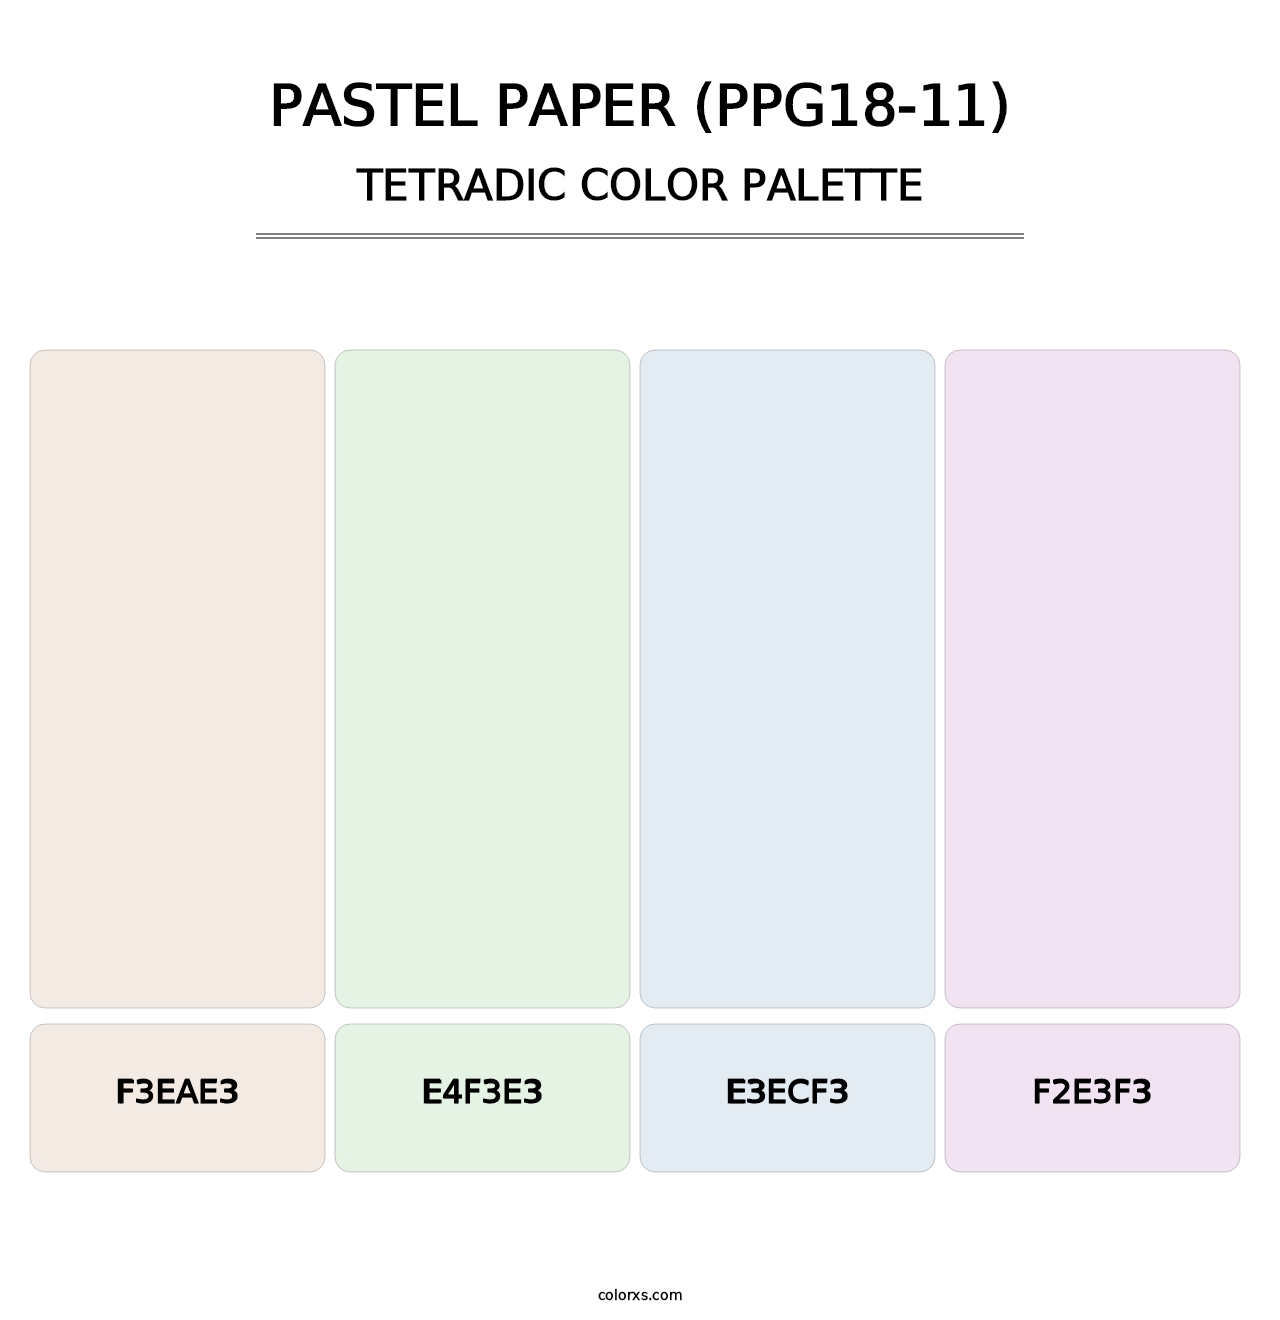 Pastel Paper (PPG18-11) - Tetradic Color Palette